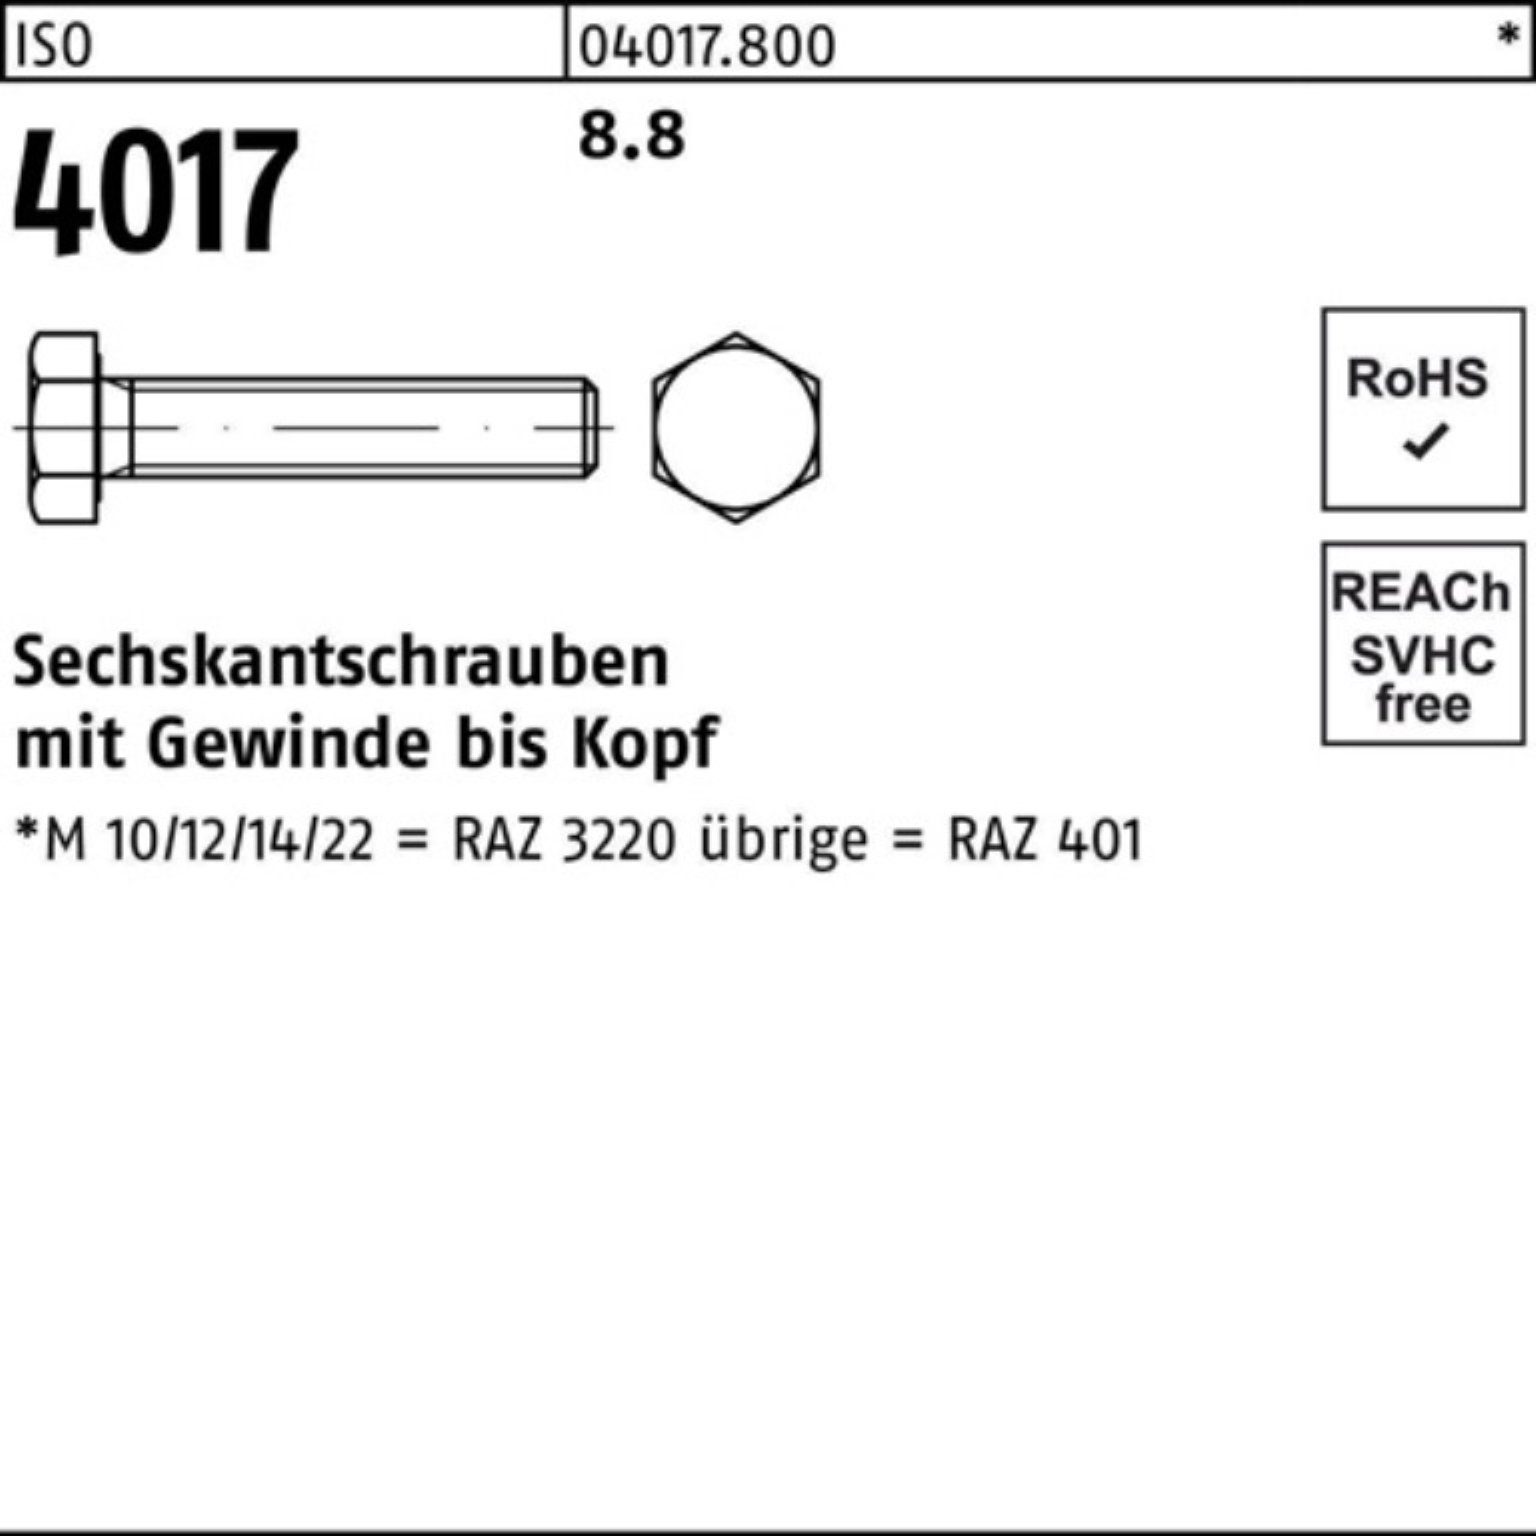 Sechskantschraube 40 Bufab Stück M14x 8.8 100 ISO 4017 55 ISO Pack VG 100er Sechskantschraube